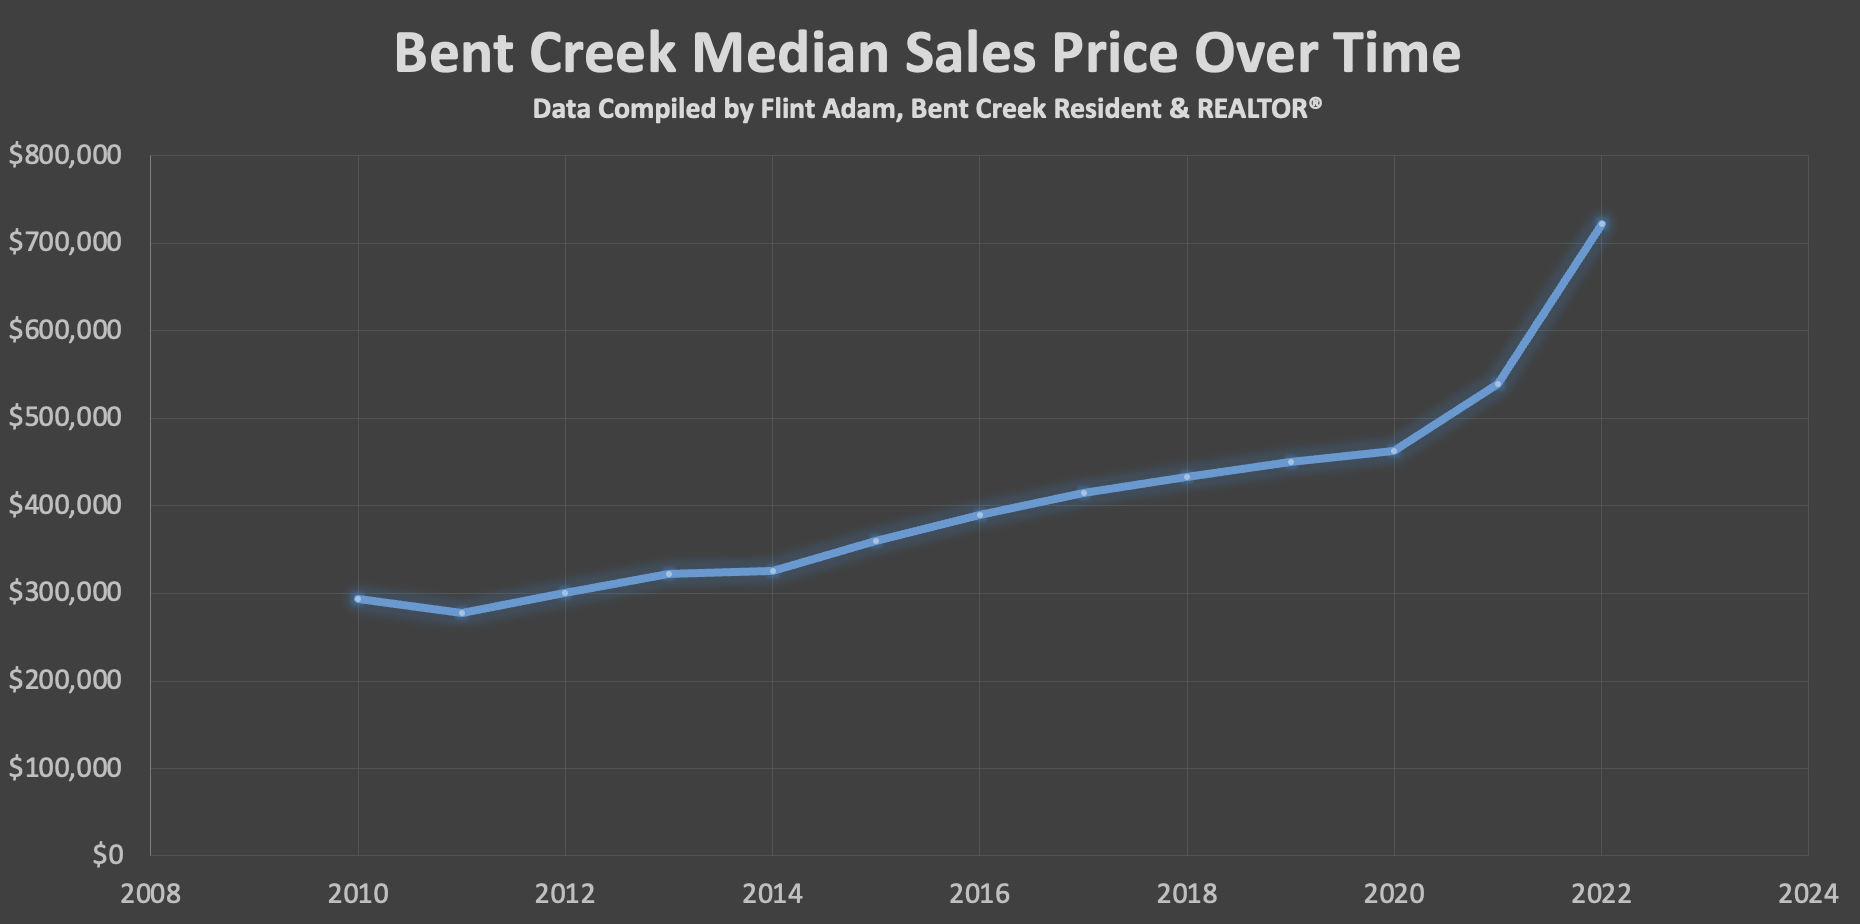 Bent Creek Median Sales Price 2010-2022